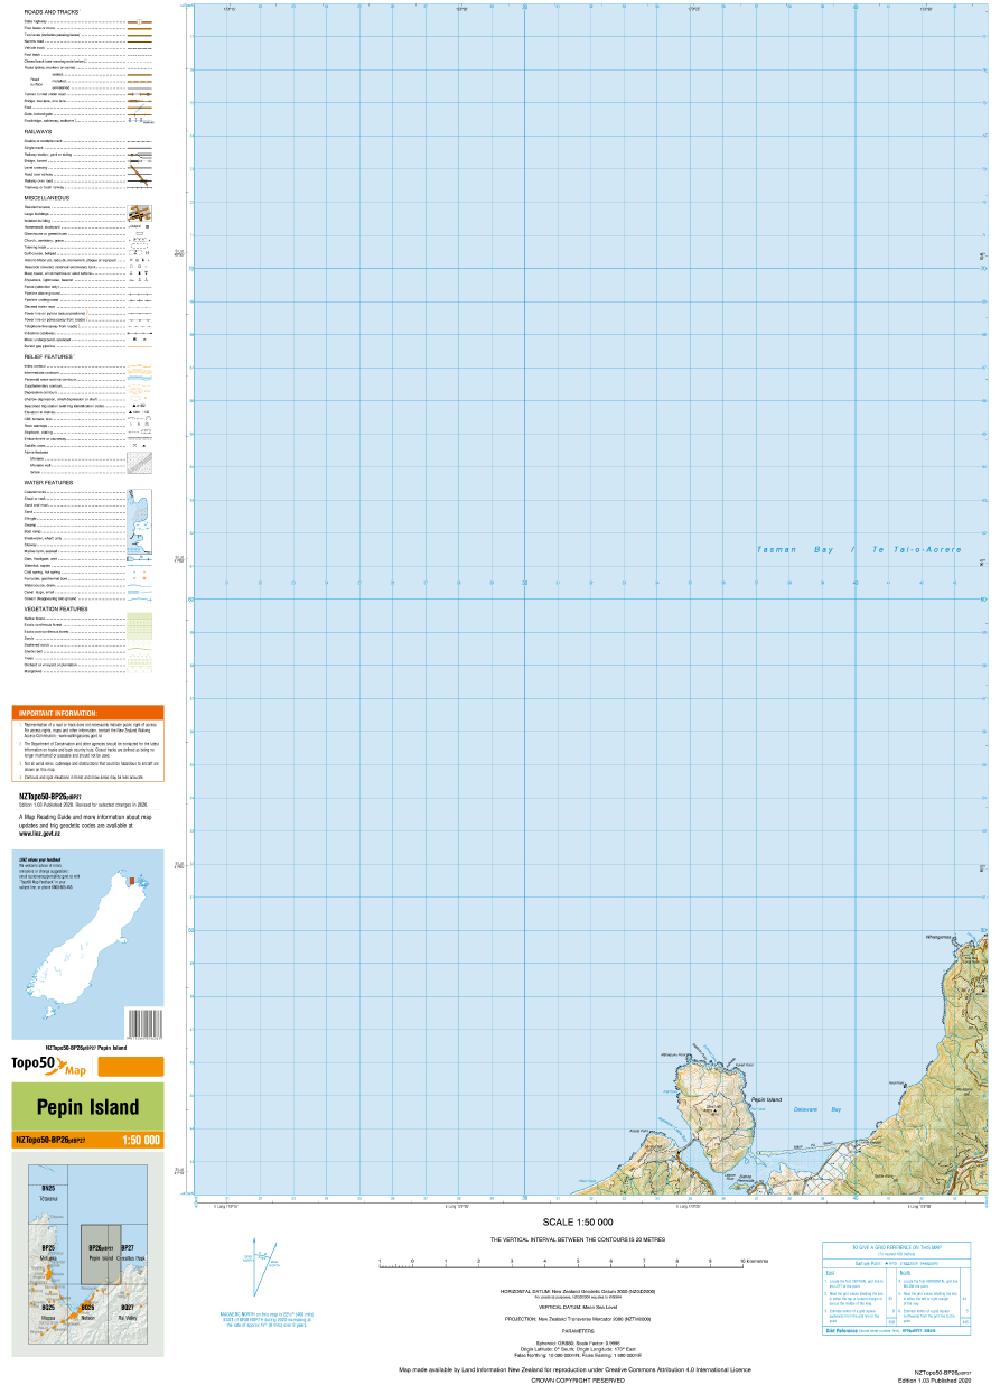 Topo map of Pepin Island